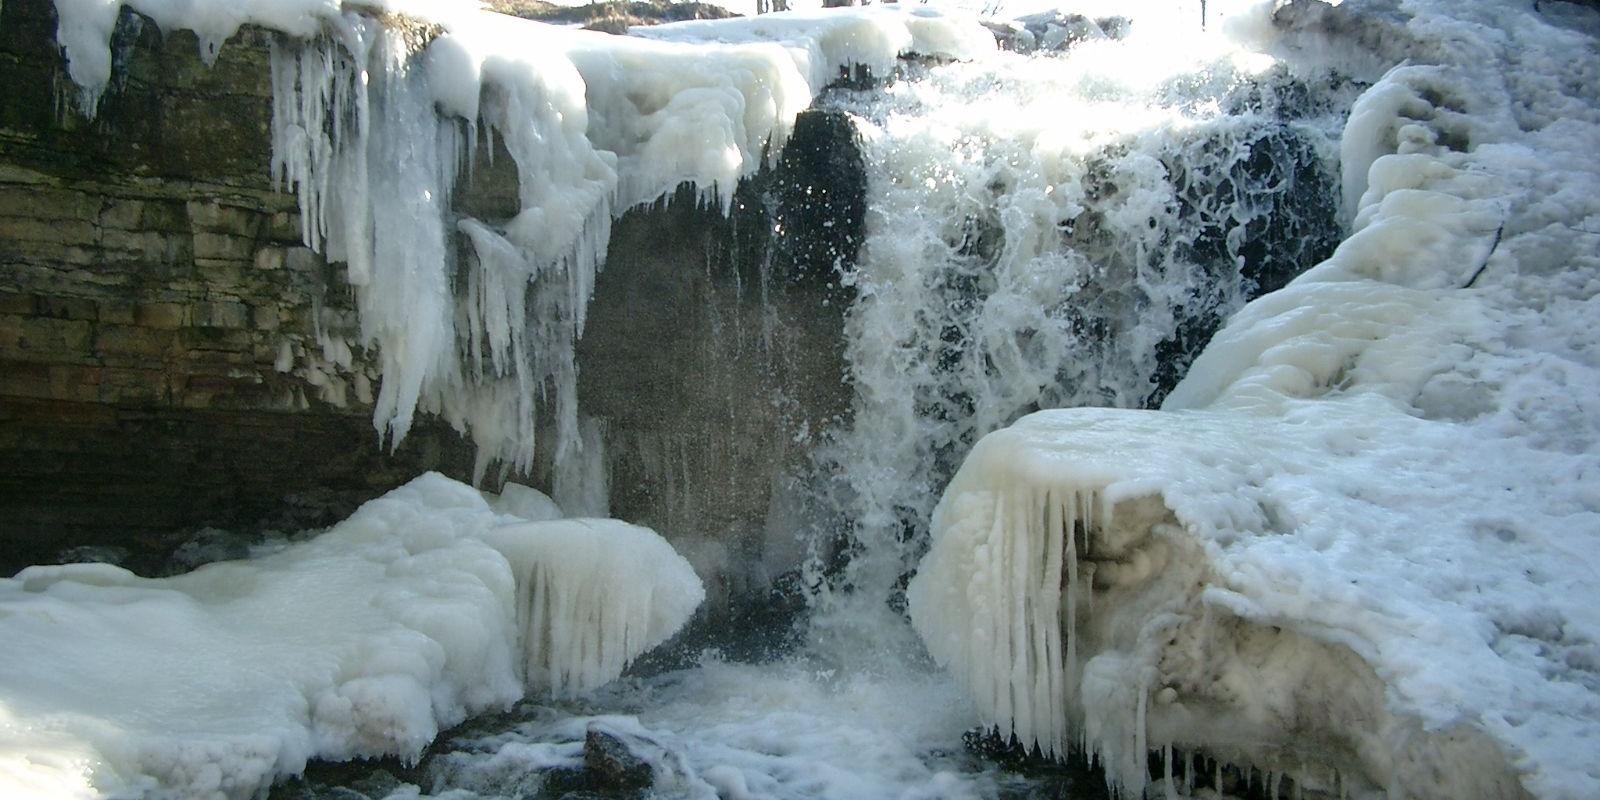 Langevoja waterfall